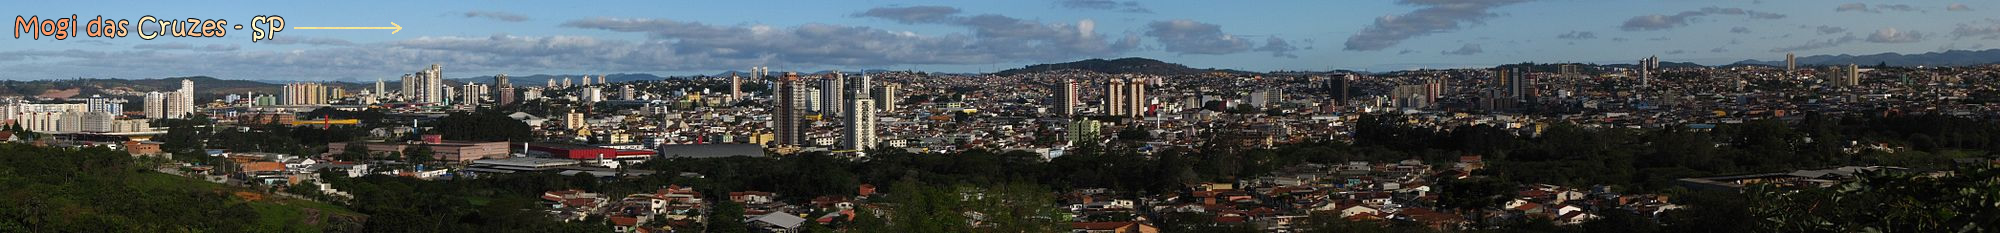 Vista panormica de Mogi das Cruzes a partir da Serra do Itapety.